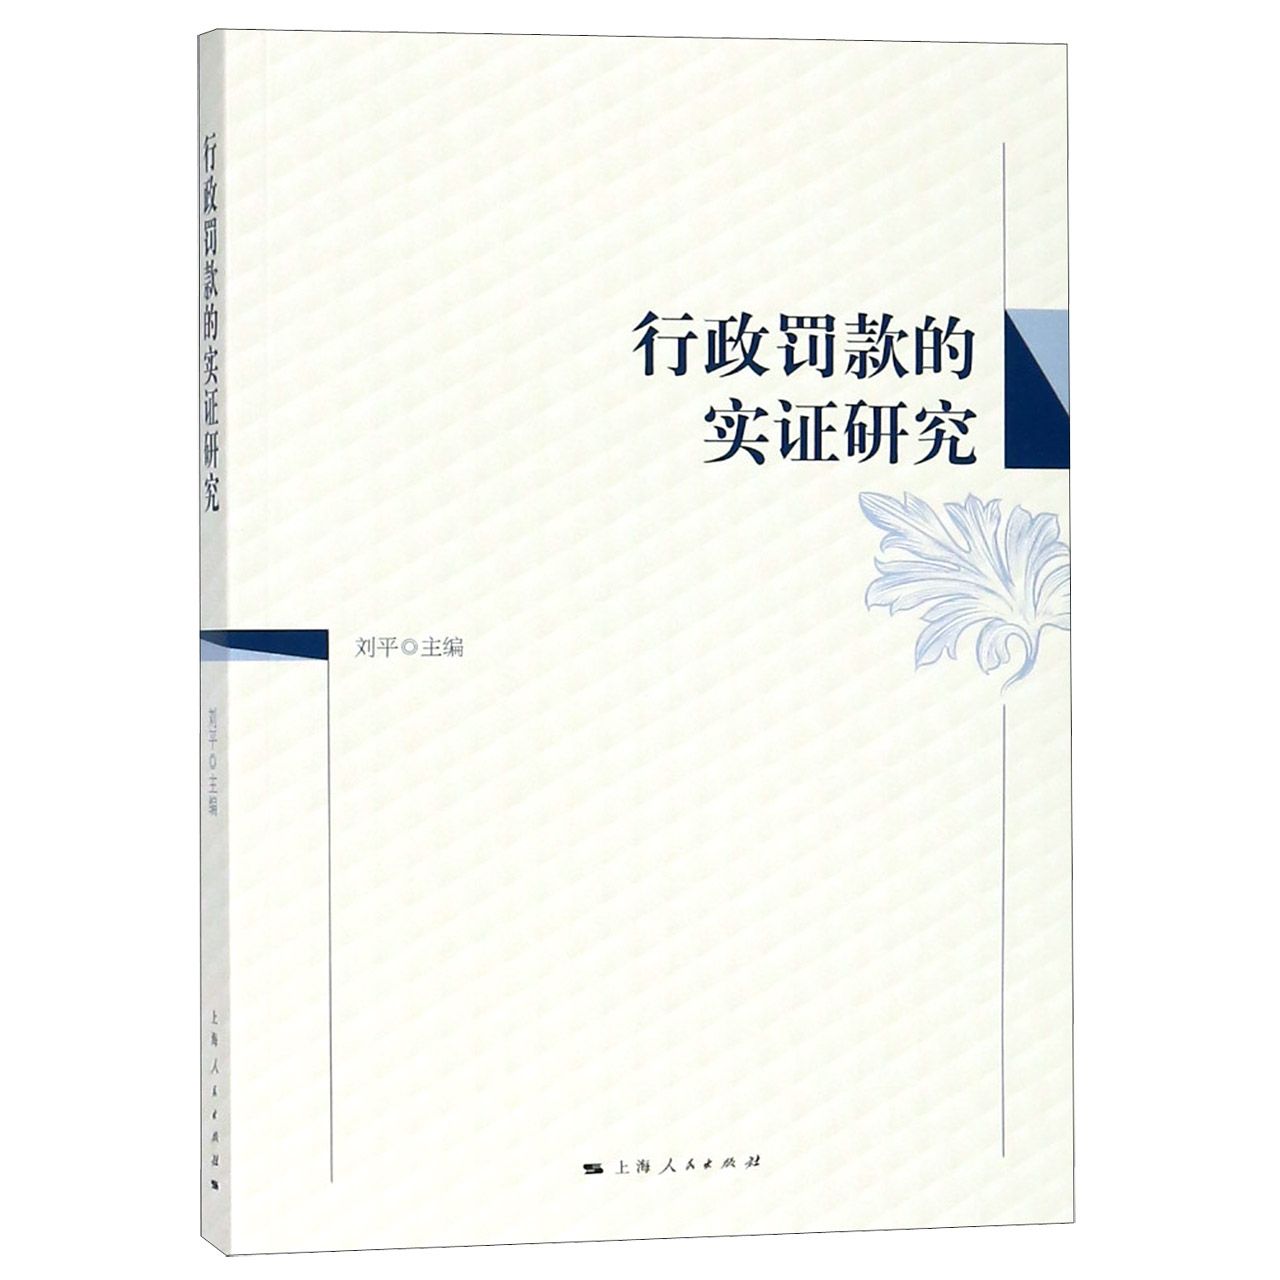 行政罚款的实研究编者:刘平9787208155138法律/行政法